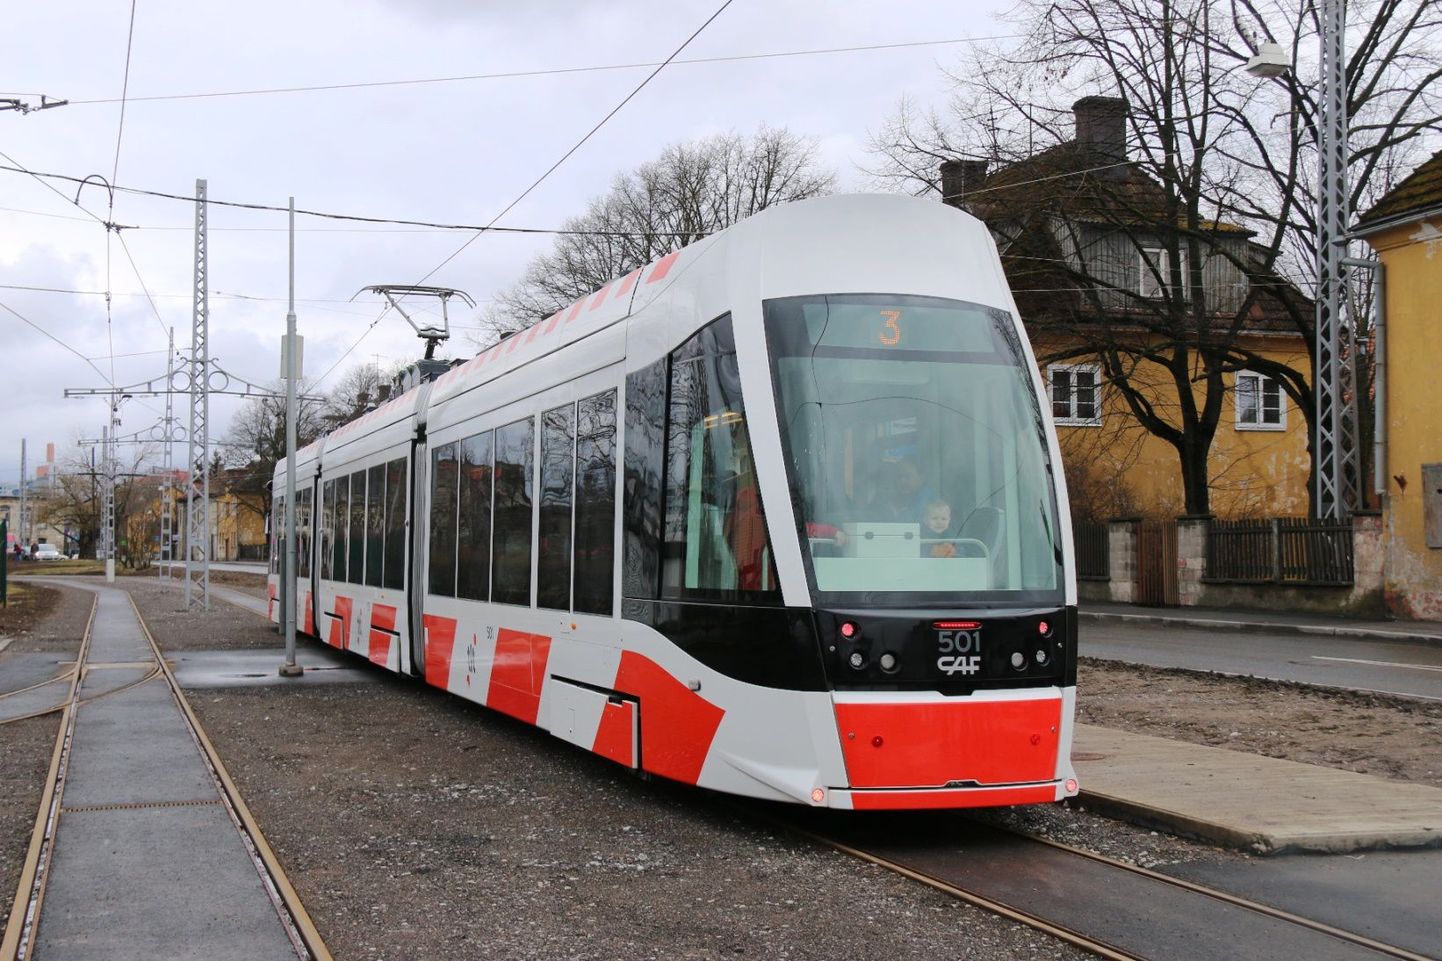 Hispaania ettevõtte Construcciones y Auxiliar de Ferrocarriles (CAF) Urbos tüüpi tramm, millised on ka praegu Tallinna Linnatranspordi veeremis.